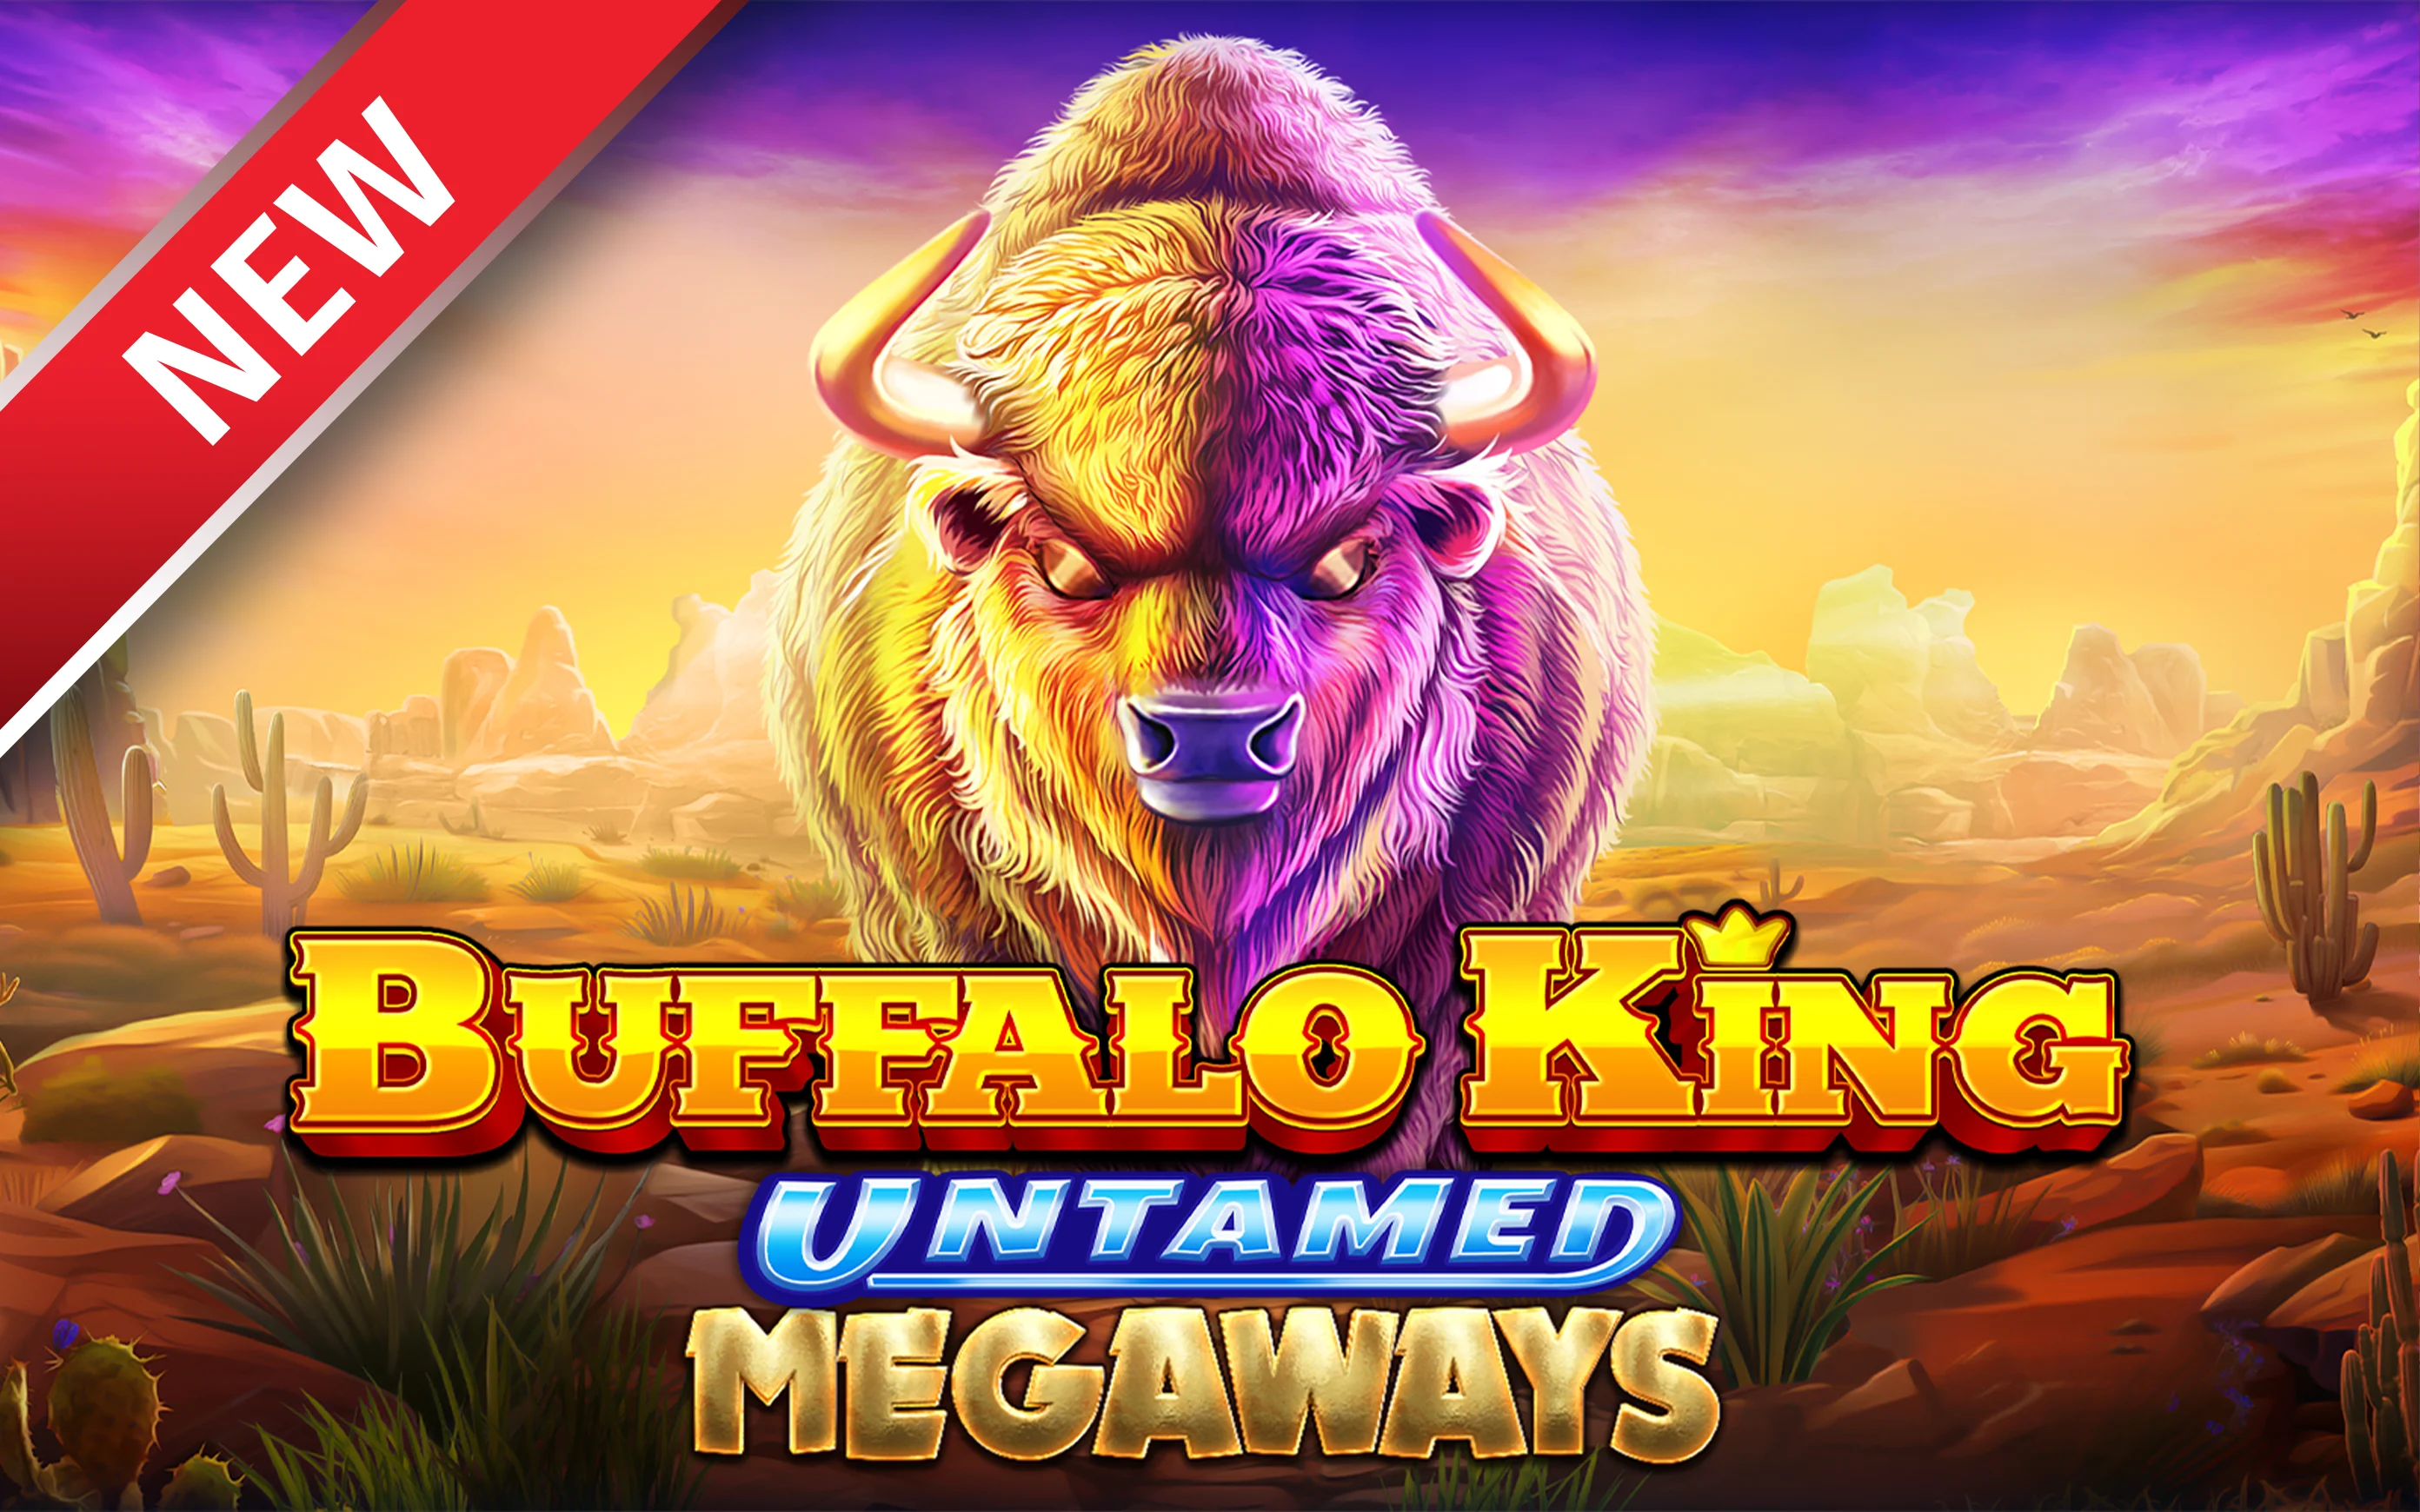 เล่น Buffalo King Untamed Megaways™ บนคาสิโนออนไลน์ Starcasino.be